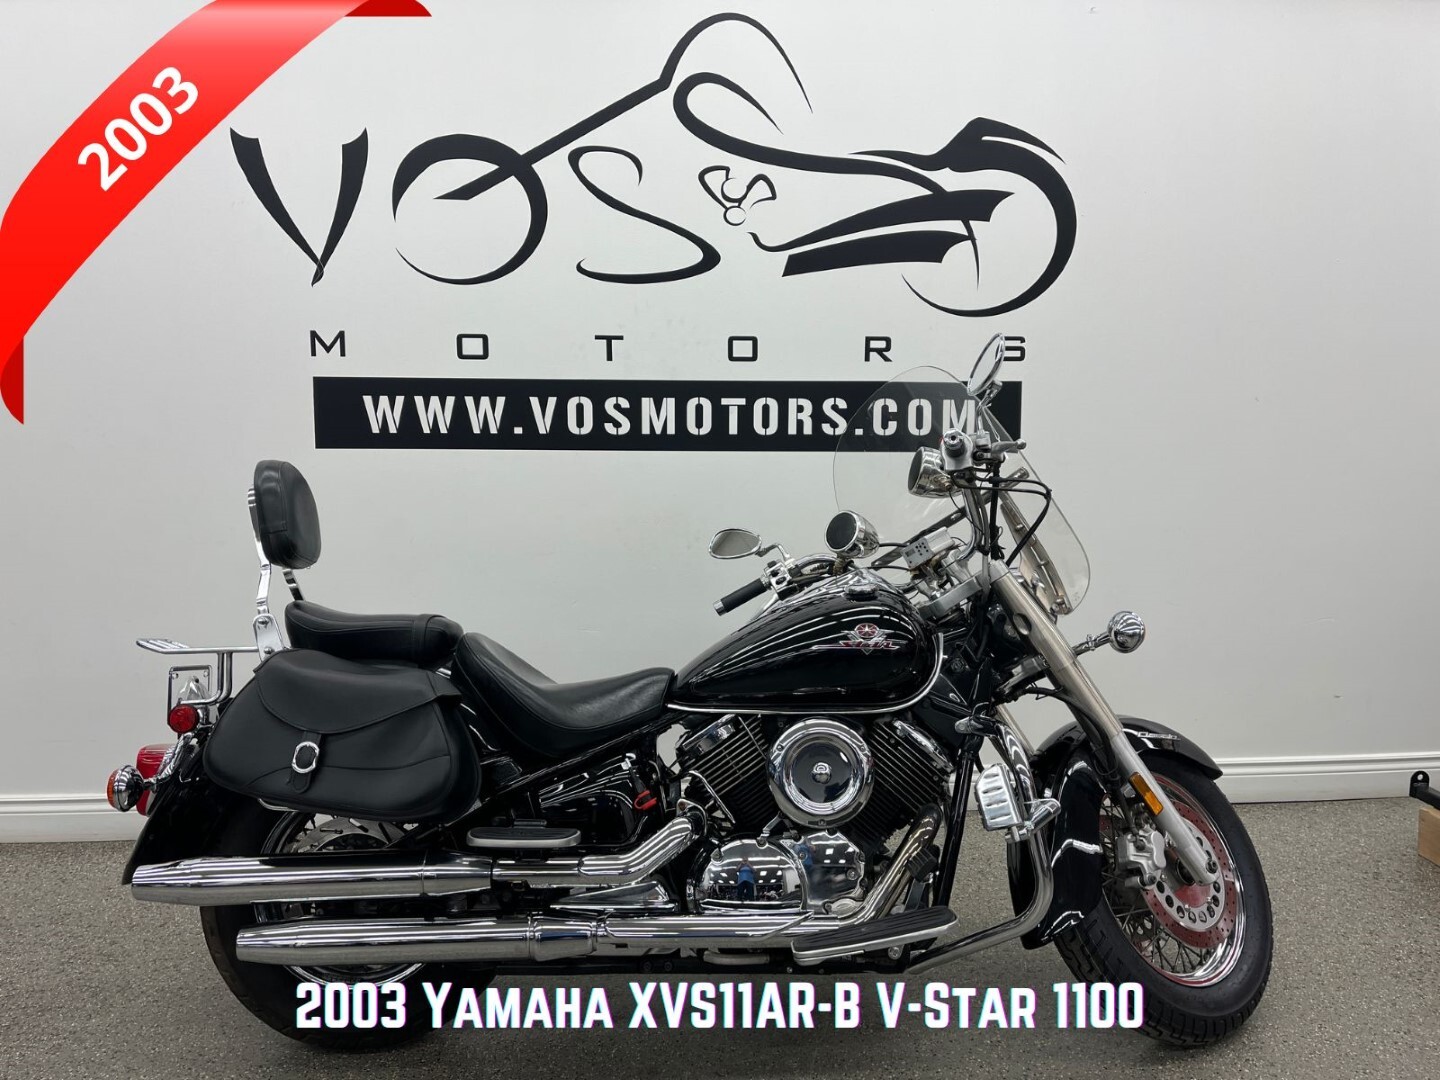 2003 Yamaha Xvs 1100 drag star V-star 1100